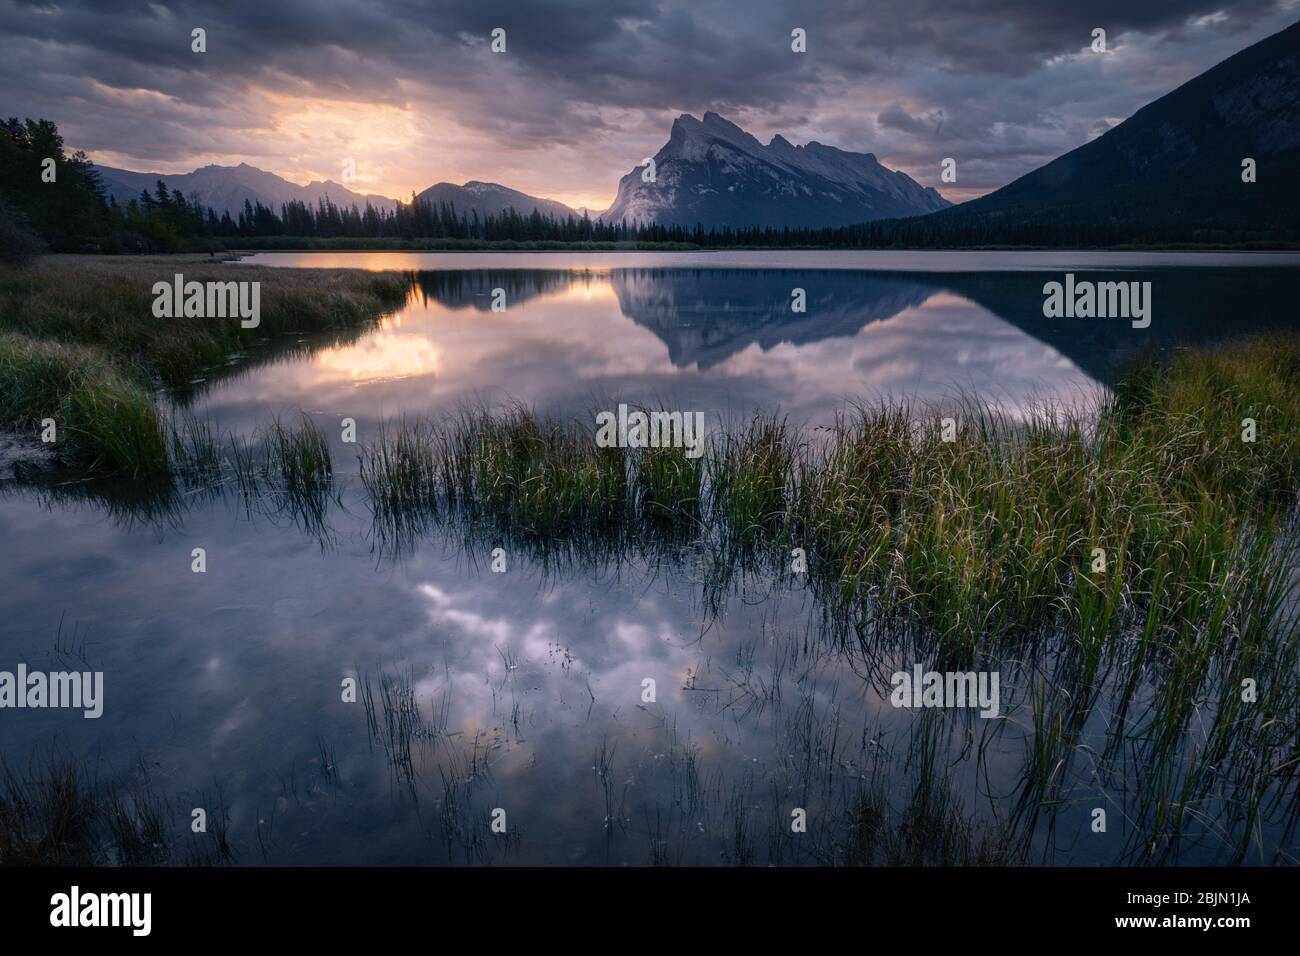 Reflets du lever du soleil et de la montagne aux lacs Vermillion, parc national Banff, Rocheuses canadiennes, Alberta, Canada Banque D'Images